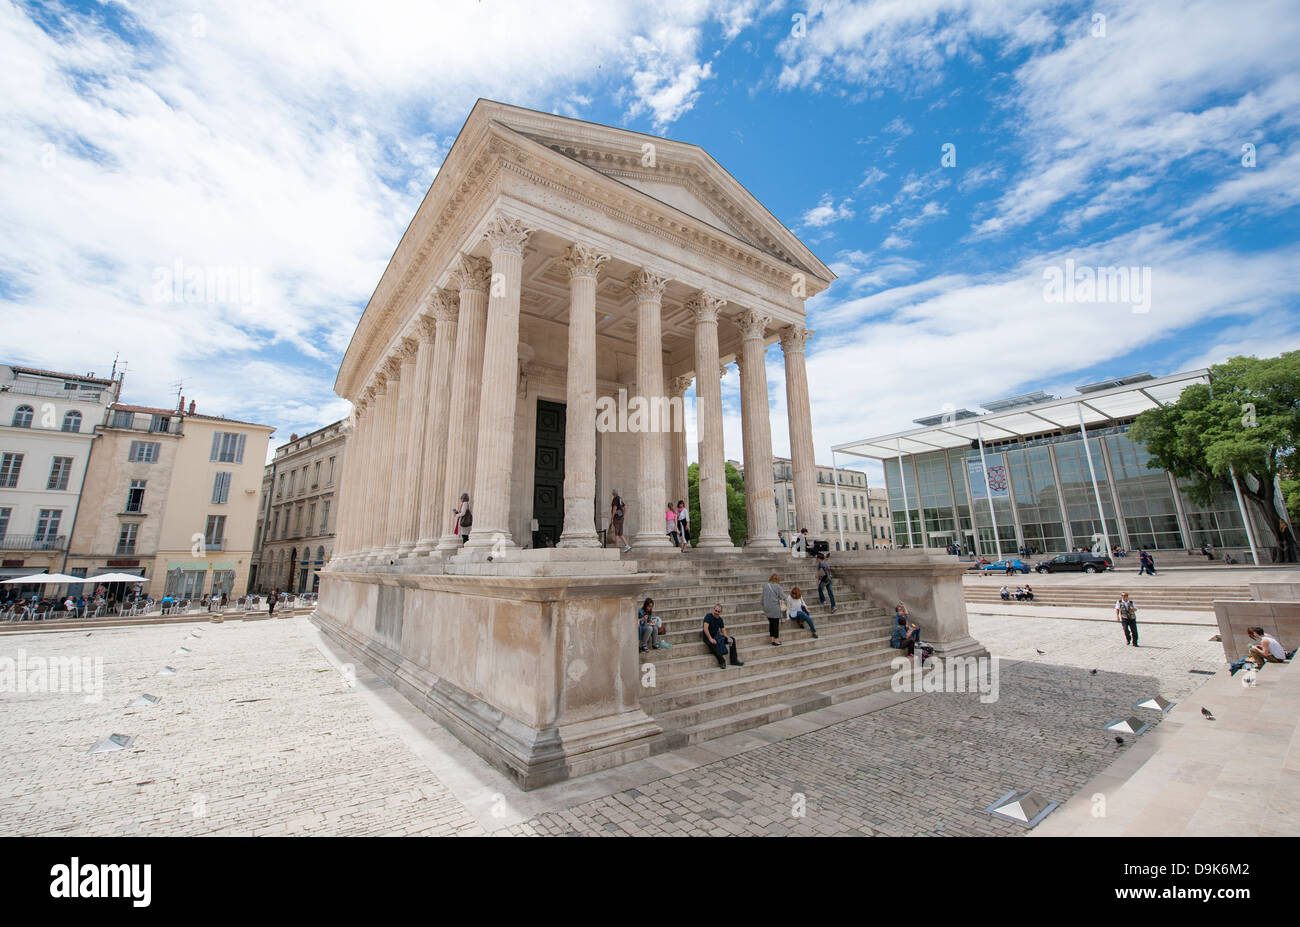 Maison Carrée, temple romain antique et Carré d'Art par Lord Norman Foster à Nîmes, Gard, Languedoc-Roussillon, France Banque D'Images